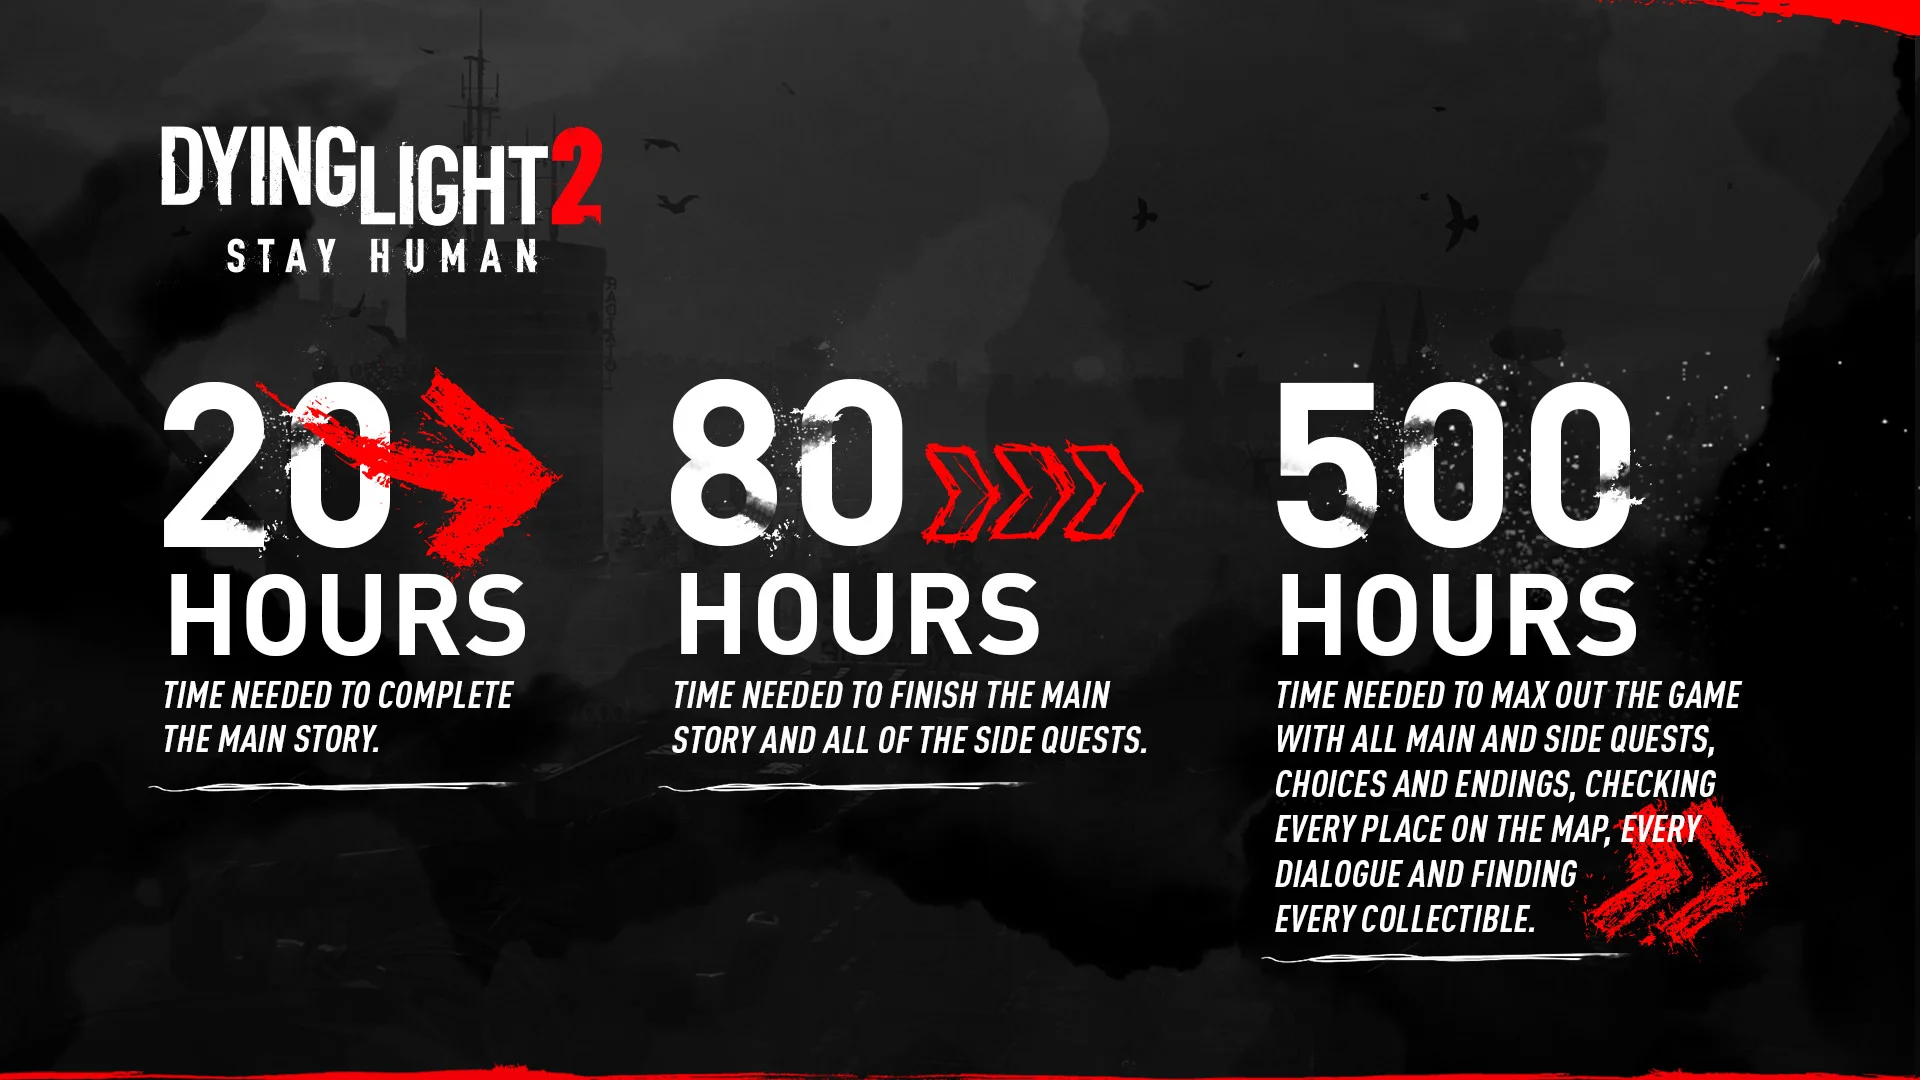 Прохождение сюжетной кампании Dying Light 2 займёт 20 часов - фото 1